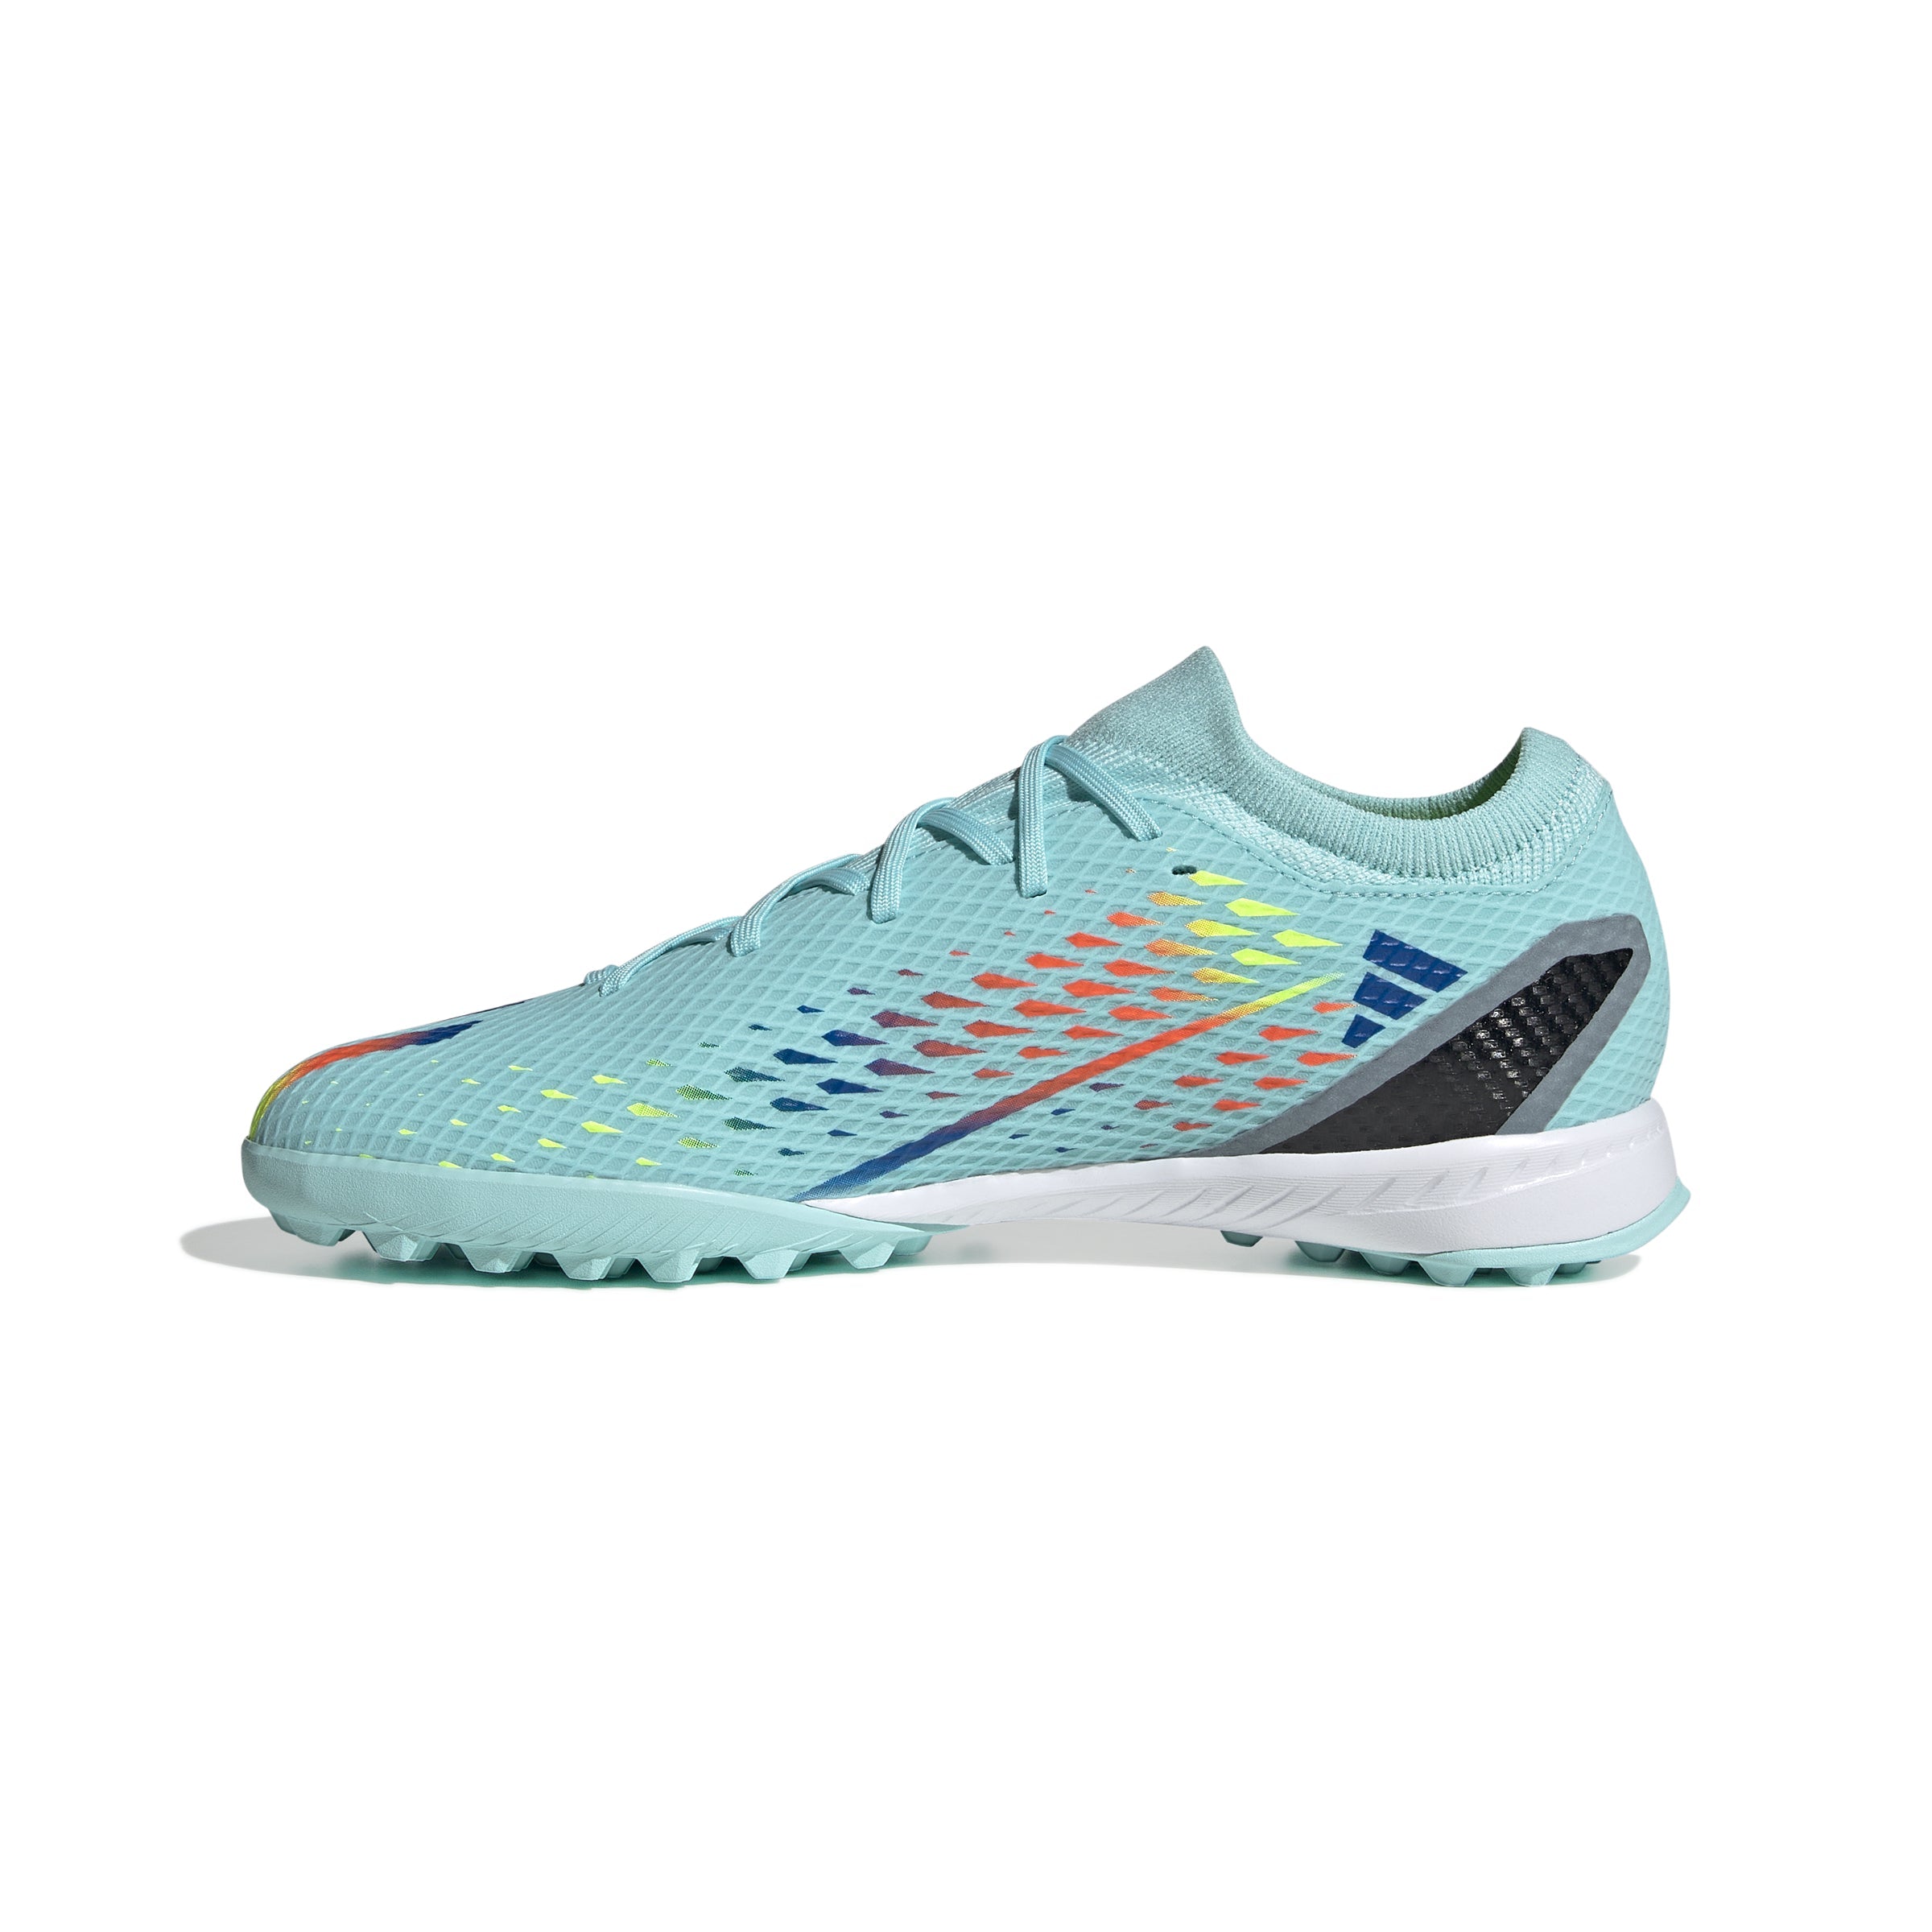 adidas X Speed Portal 3 TF Turf Shoes Aqua/Blue